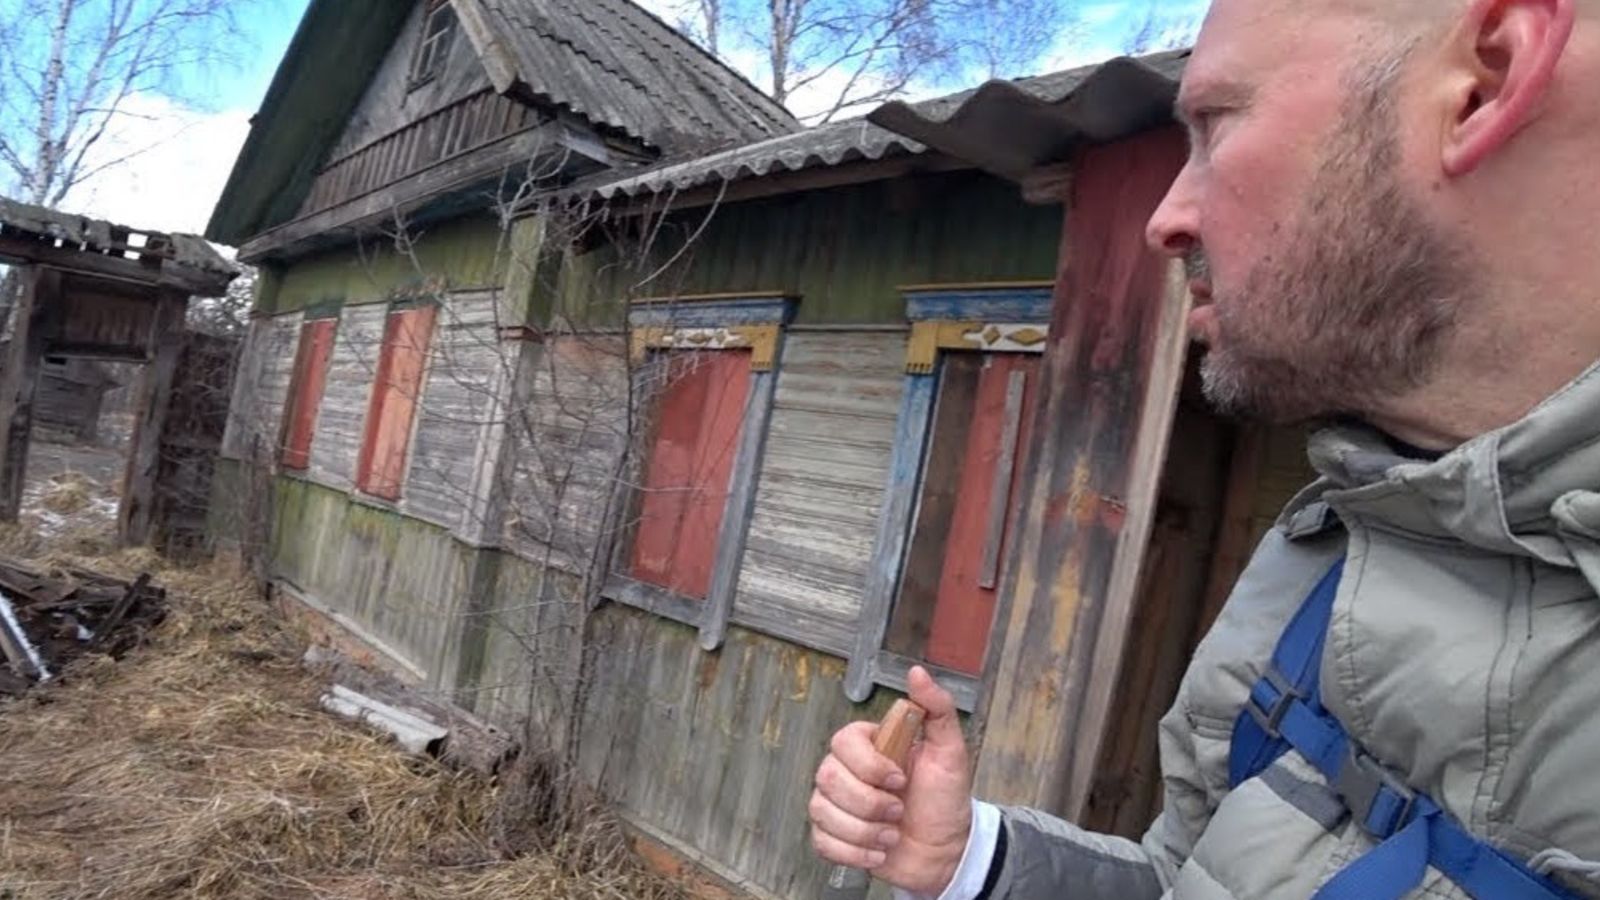 YouTuber entra a zona prohibida de Chernobyl y se encuentra a una abuela de 92 años que vive allí con su hijo